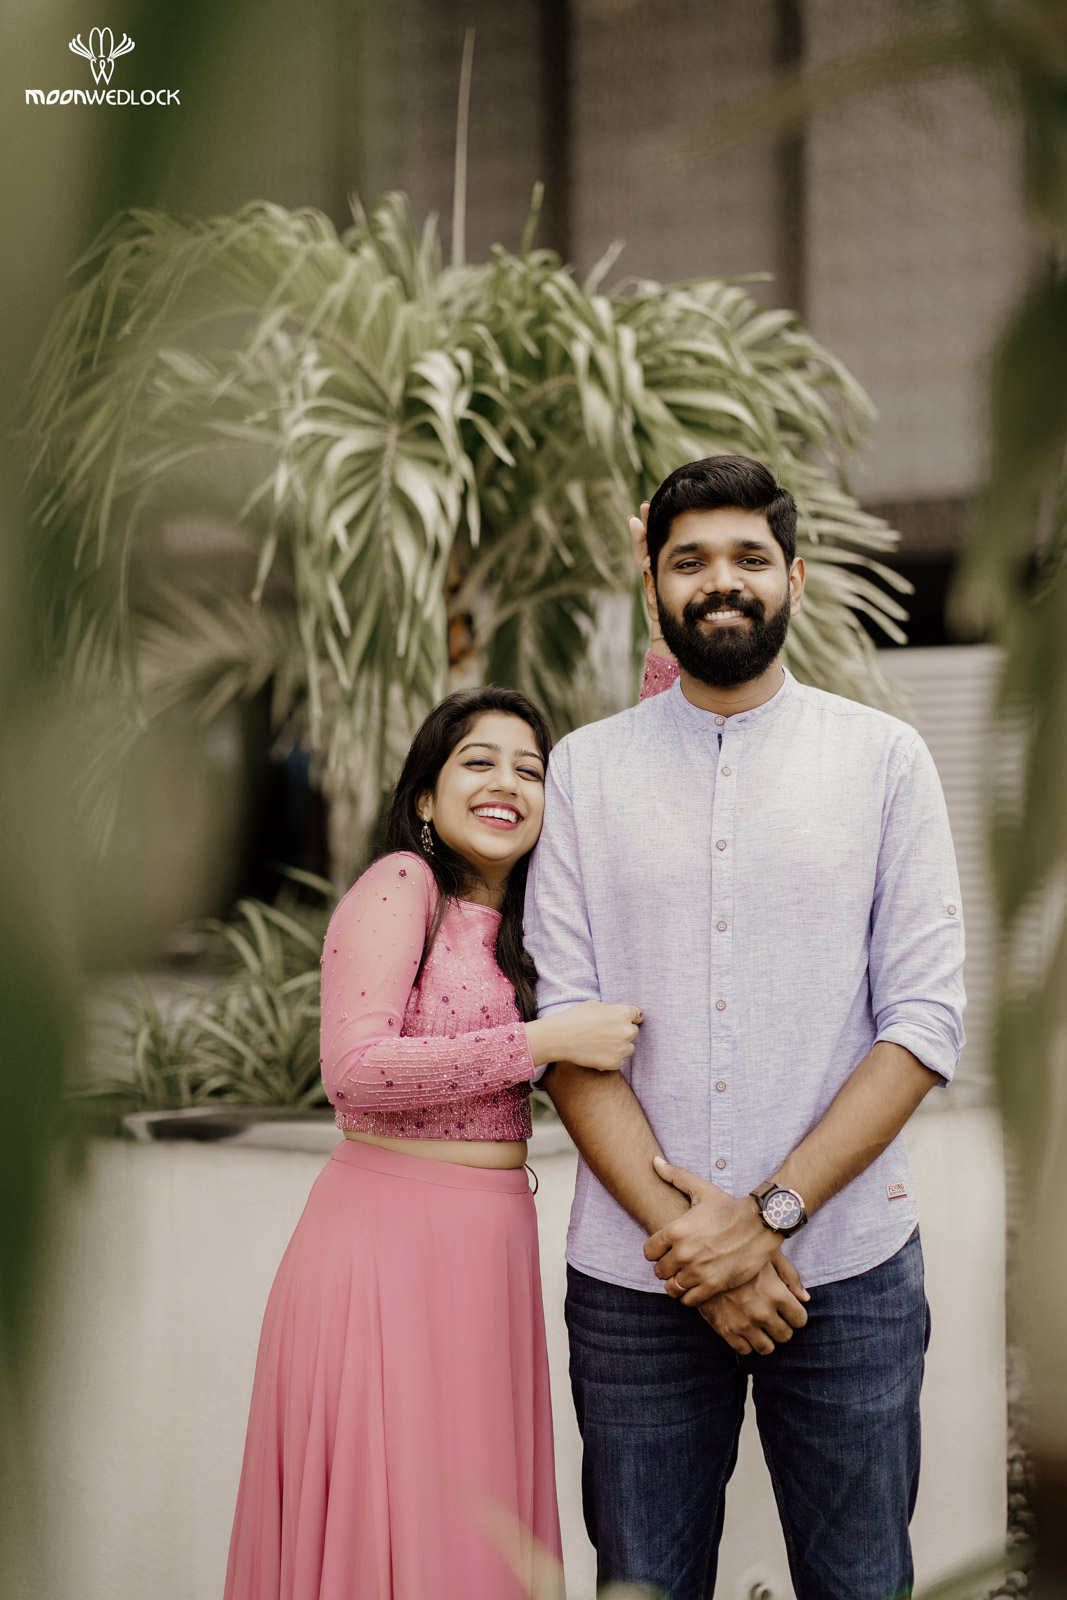 wedding-photographers-in-bangalore -moonwedlock (27)